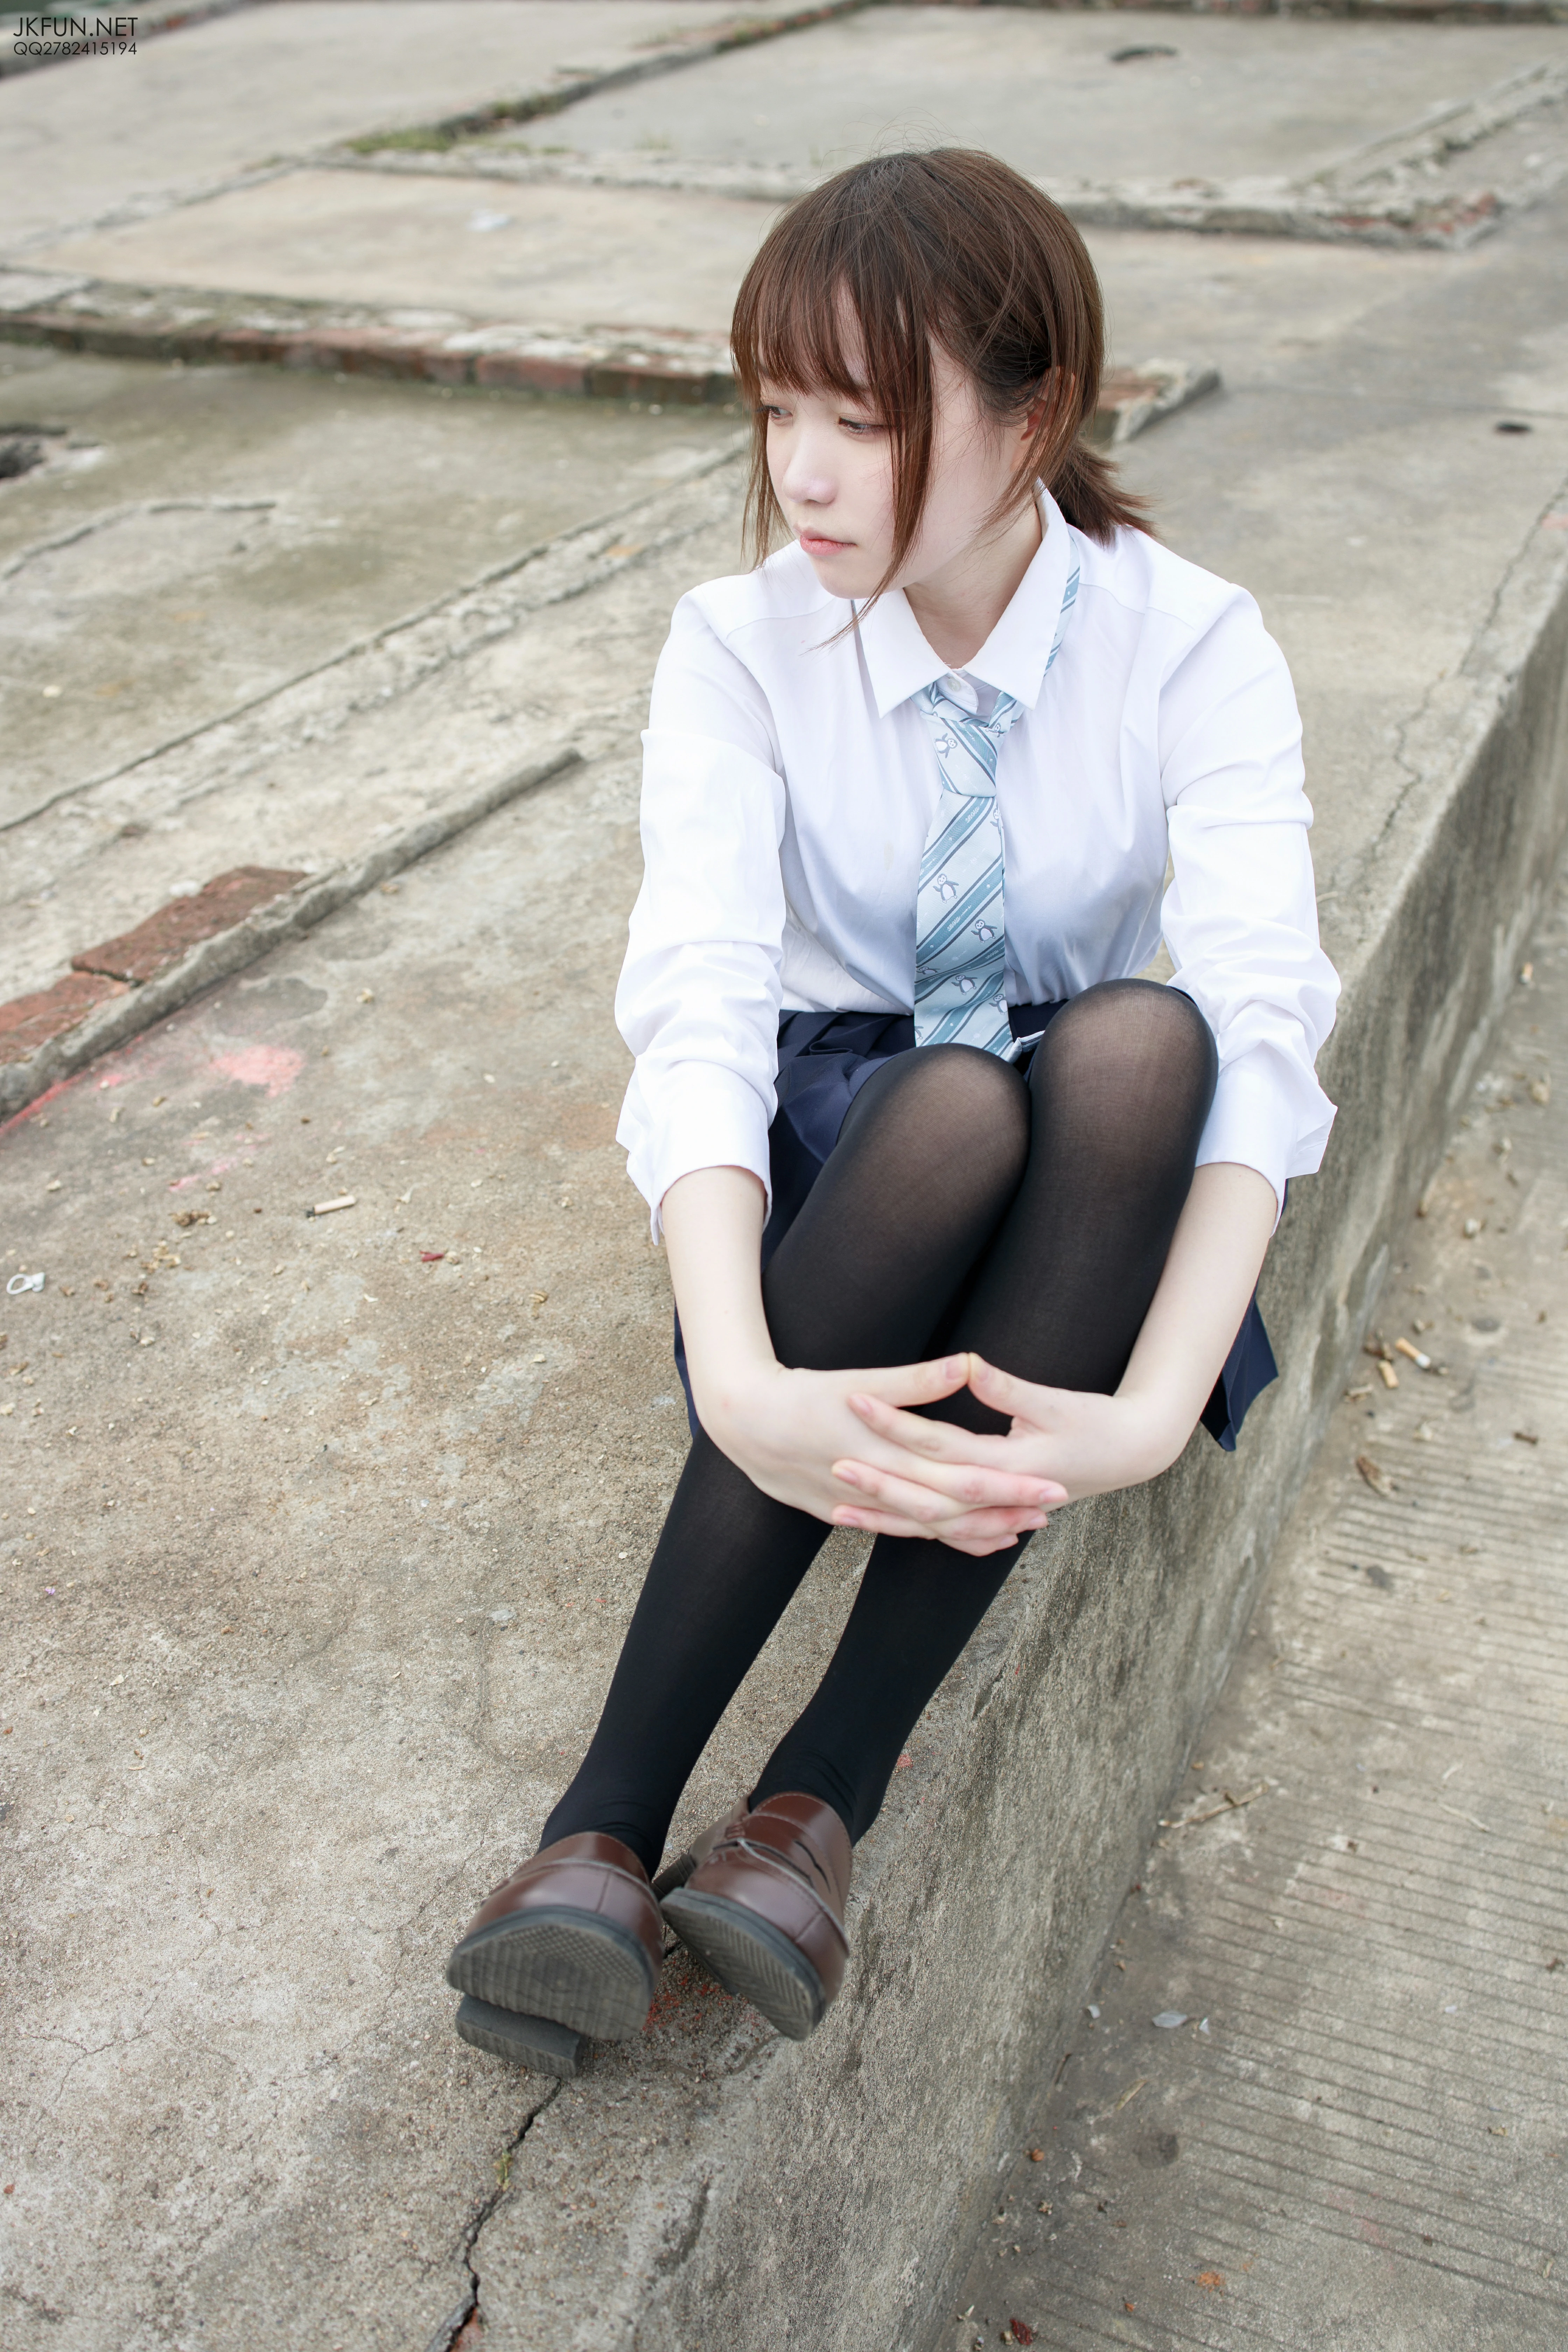 [森萝财团]JKFUN-006 性感萝莉 Aika 日本高中女生制服与短裙加黑色丝袜美腿私房写真集,